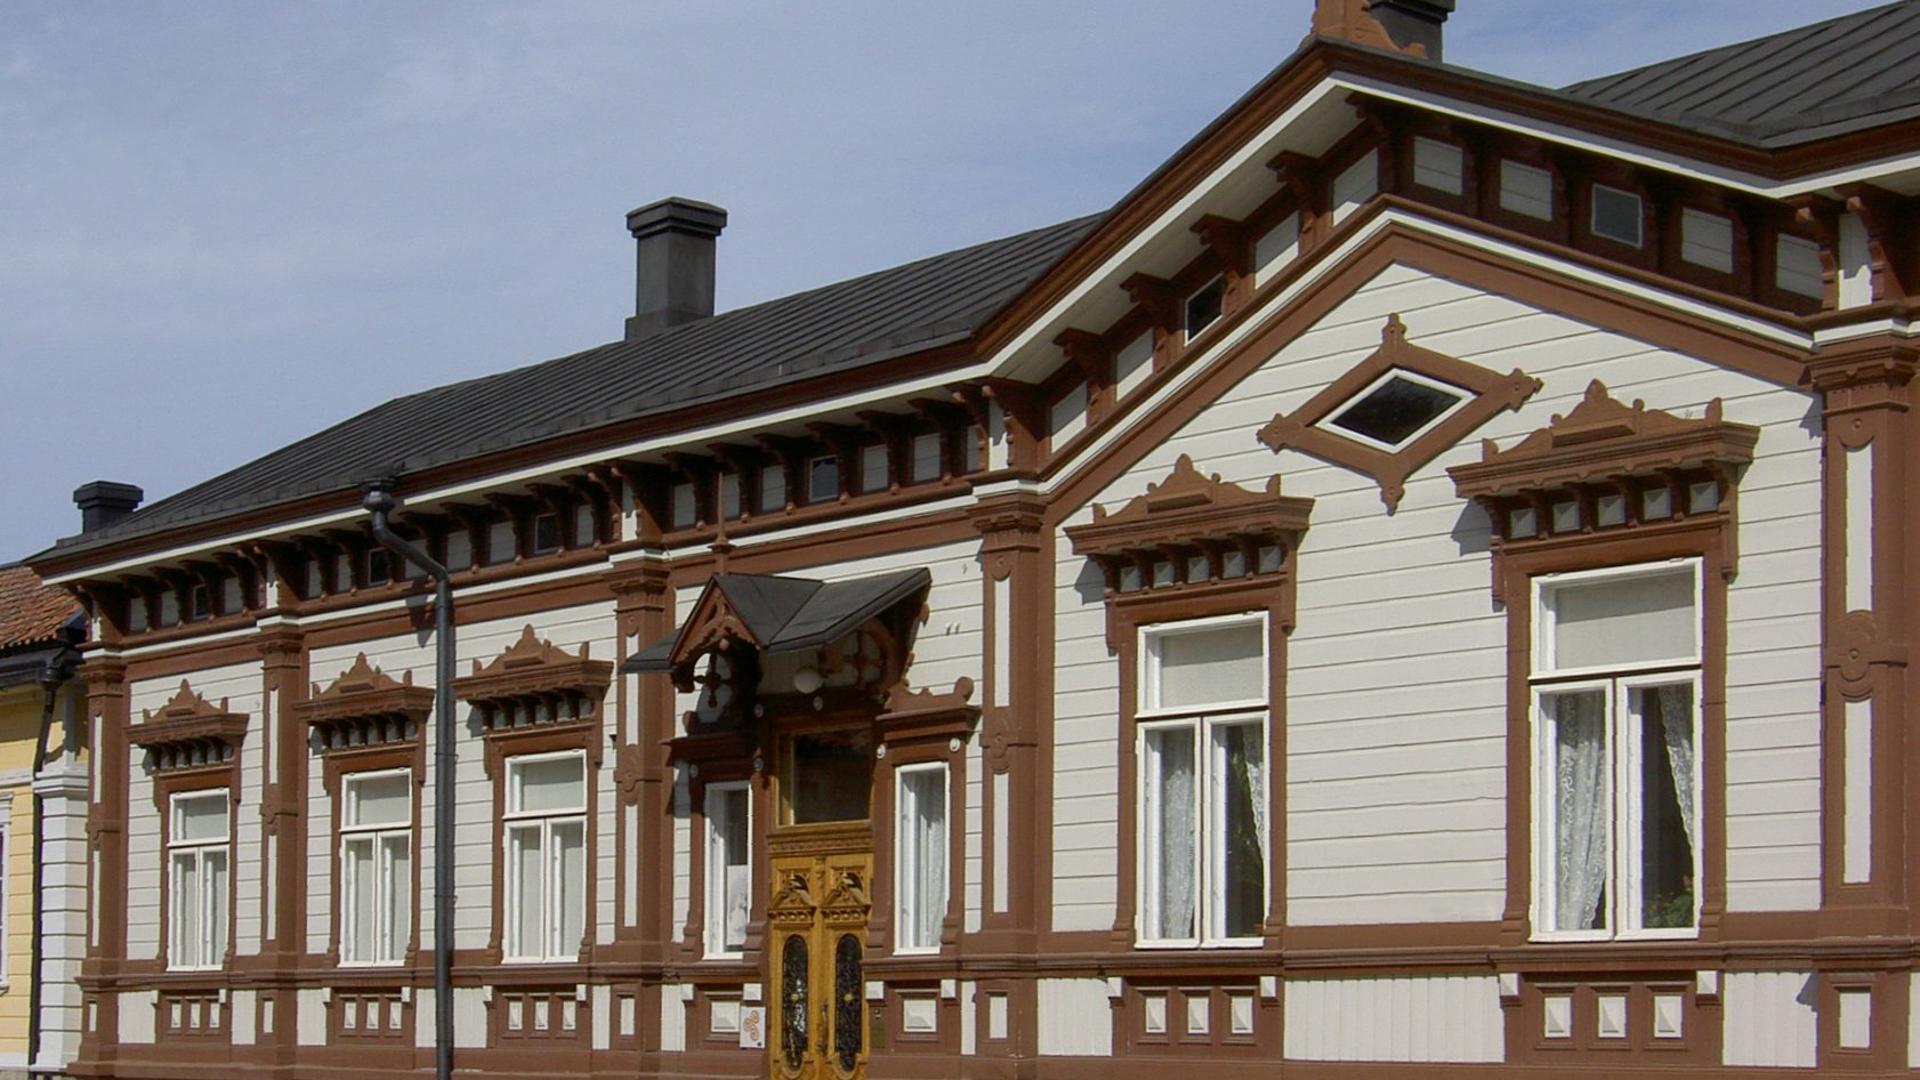 Sehr aufwendige Holzfassade mit sehr vielen Zierelementen - gesehen in Finnland.